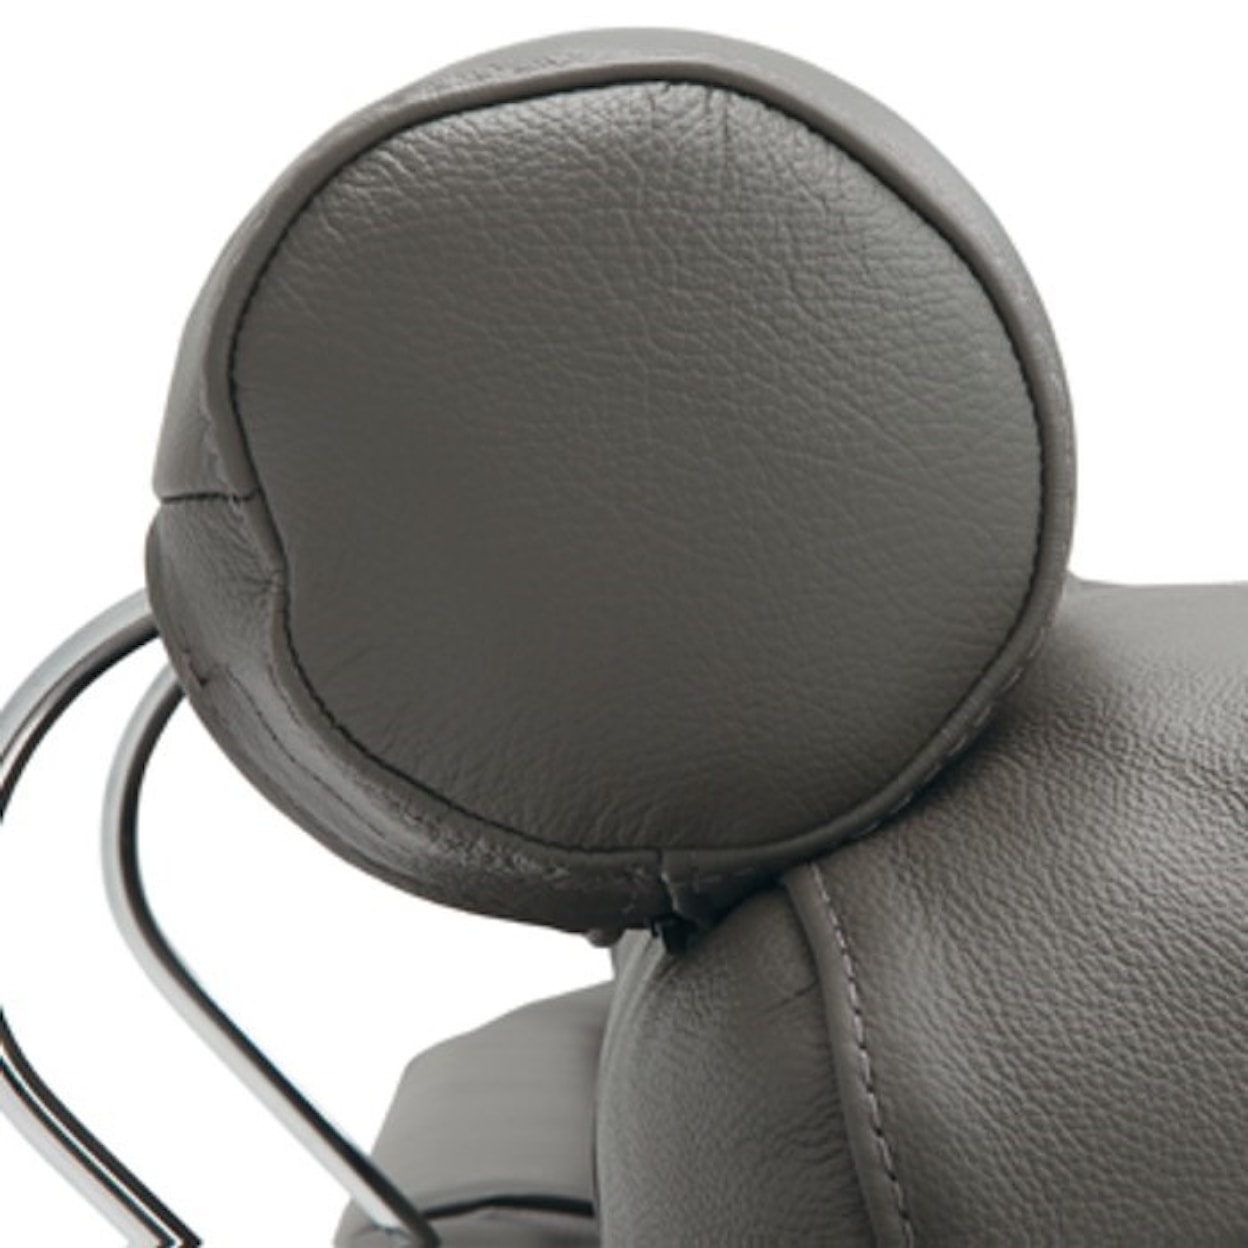 Palliser Flex 5-Seat Reclining Sectional Sofa